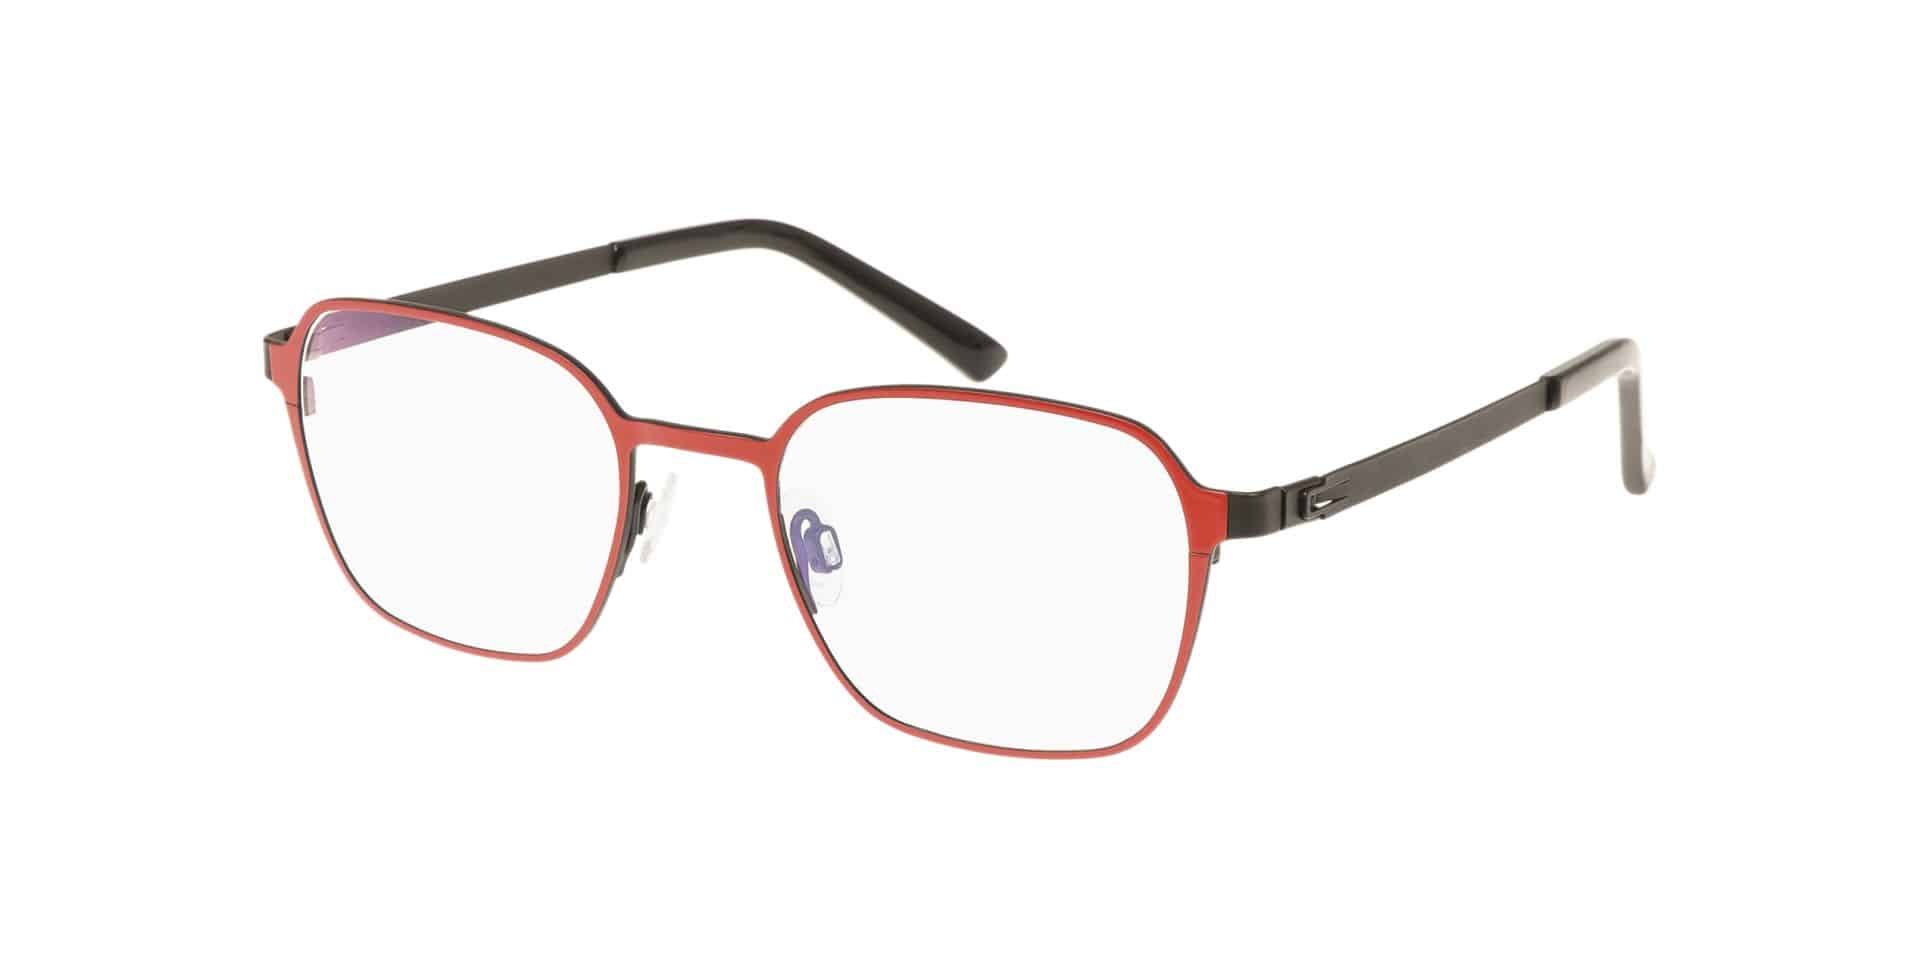 Brillen für kleine Gesichter PARVUM 3314 rot schwarz matt